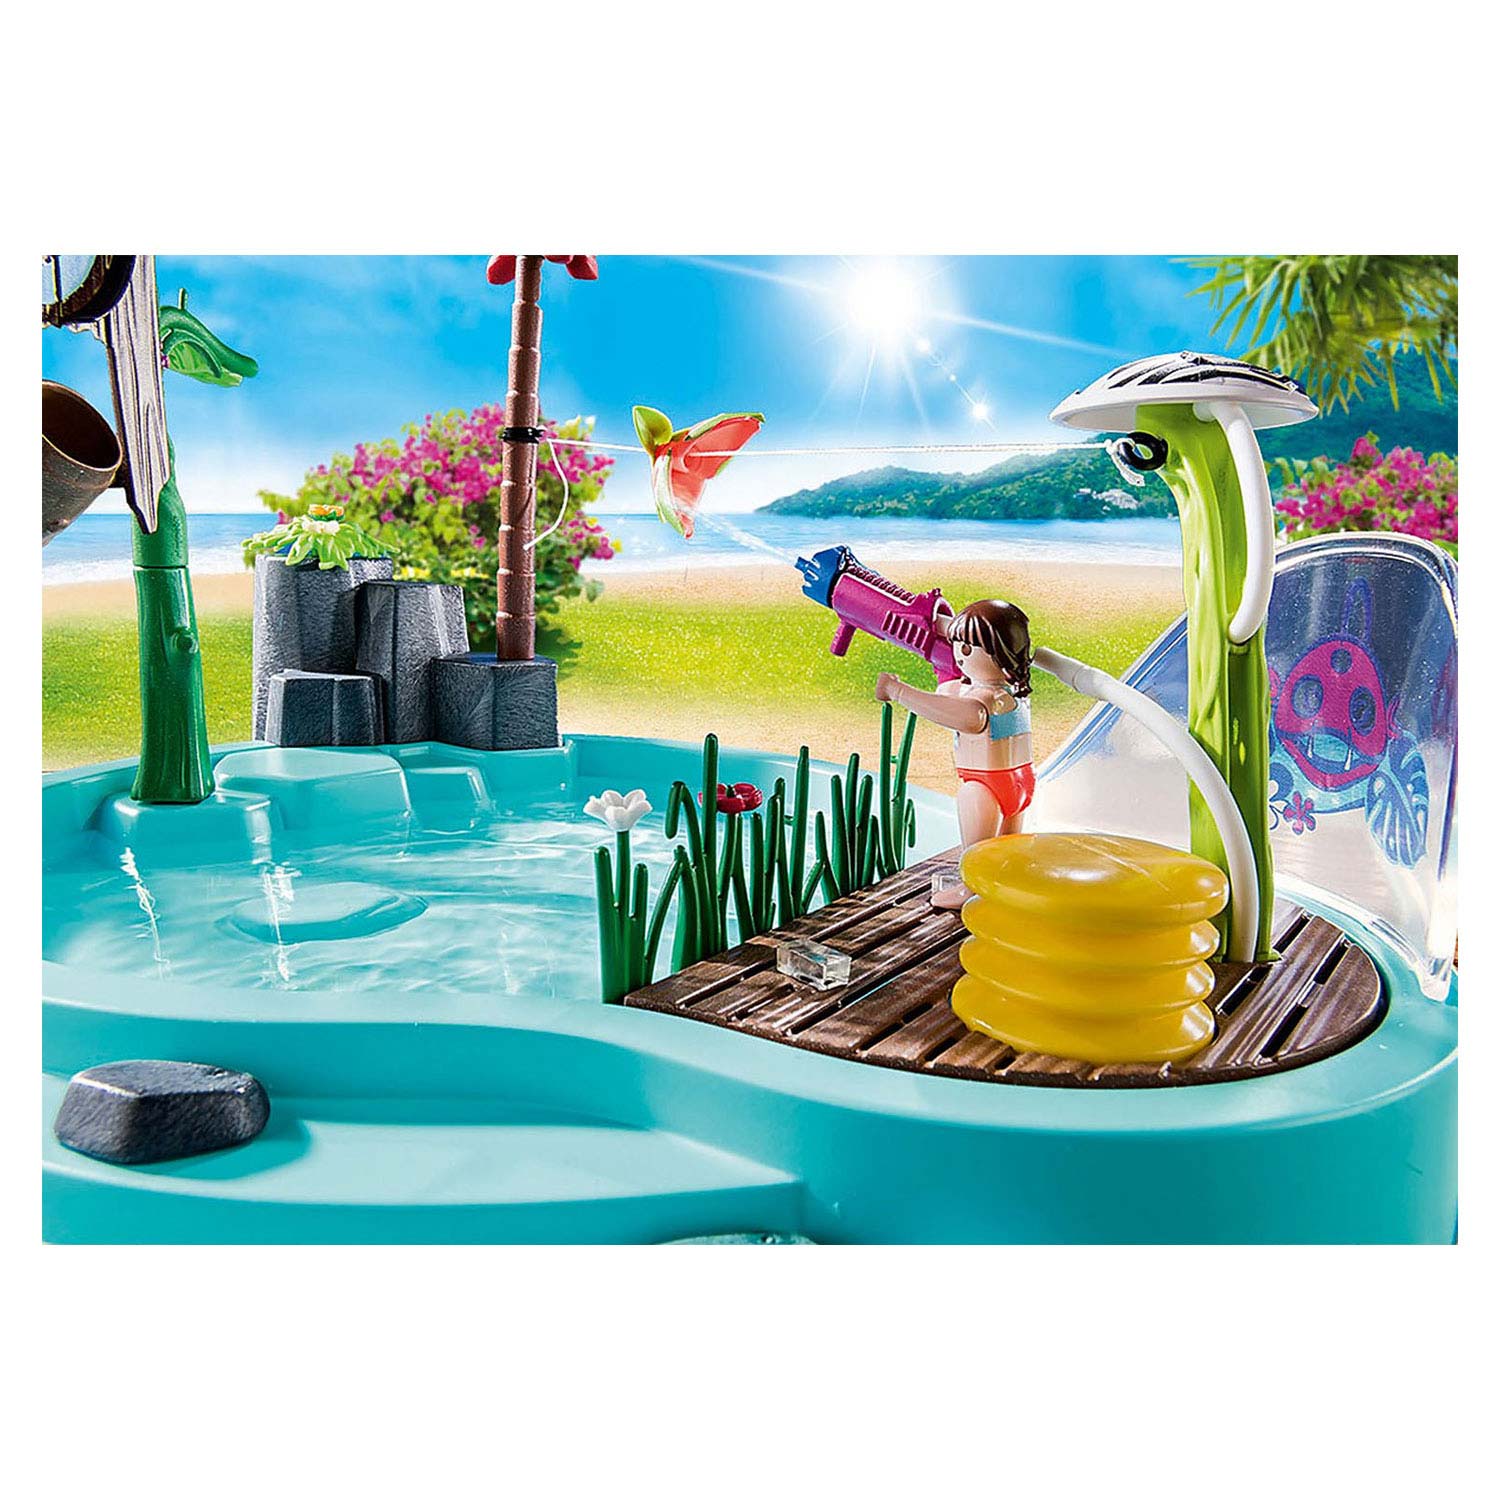 Playmobil Family Fun Schwimmbad mit Wasserspritzer - 70610